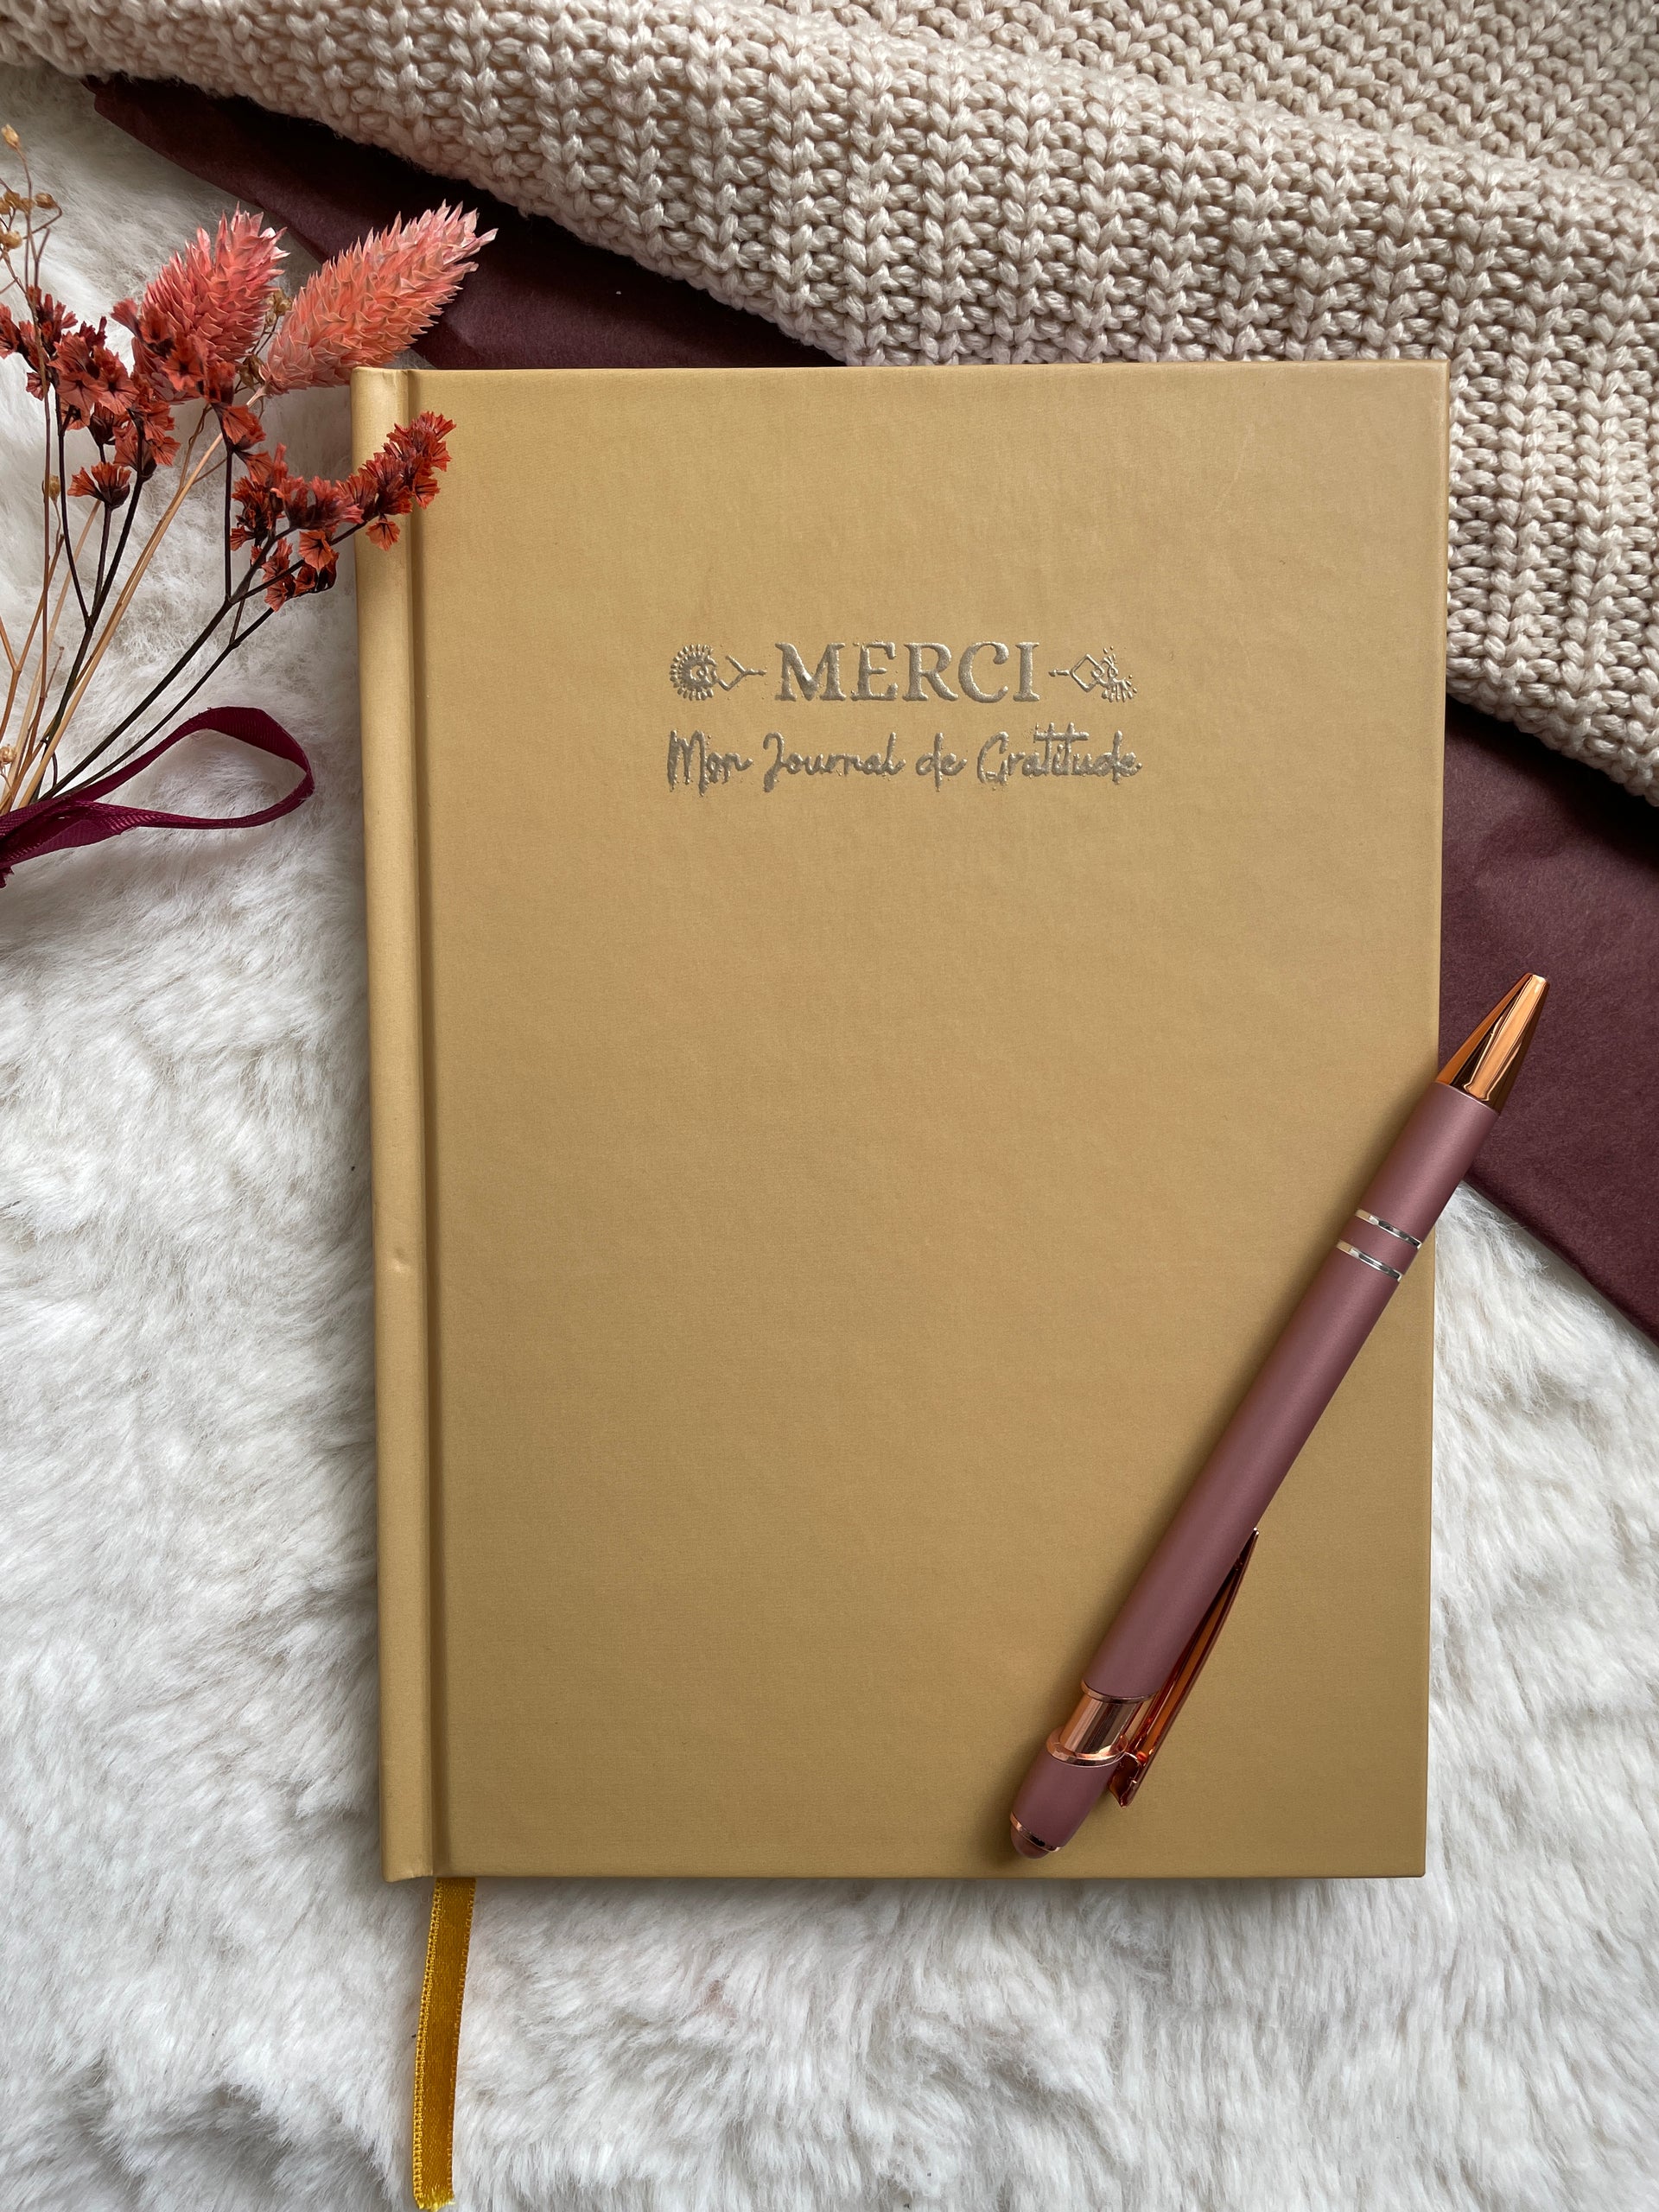 Merci - Mon Journal de Gratitude – Rebelle Books